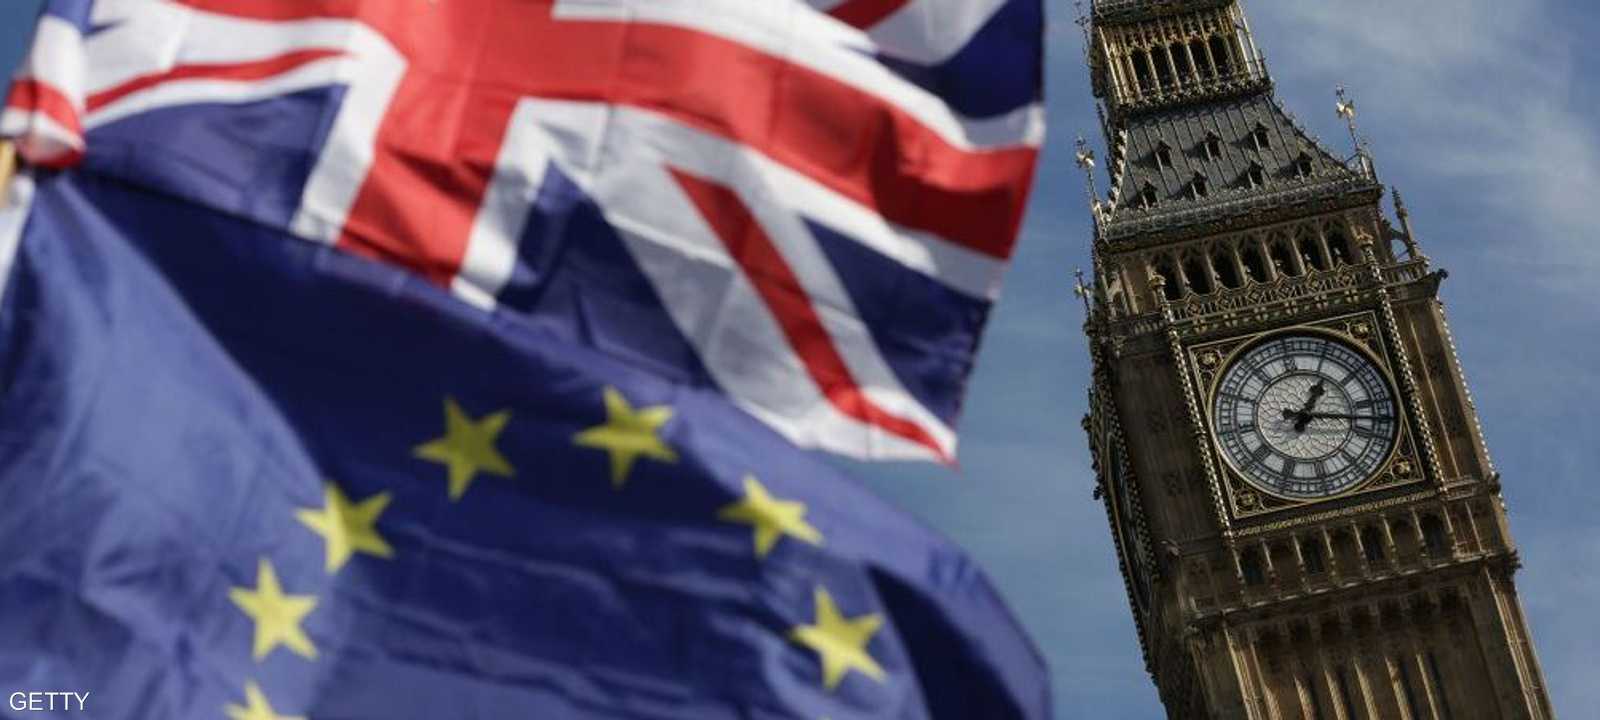 بريطانيا تواجه تحديات كبيرة منذ خروجها من الاتحاد الأوروبي